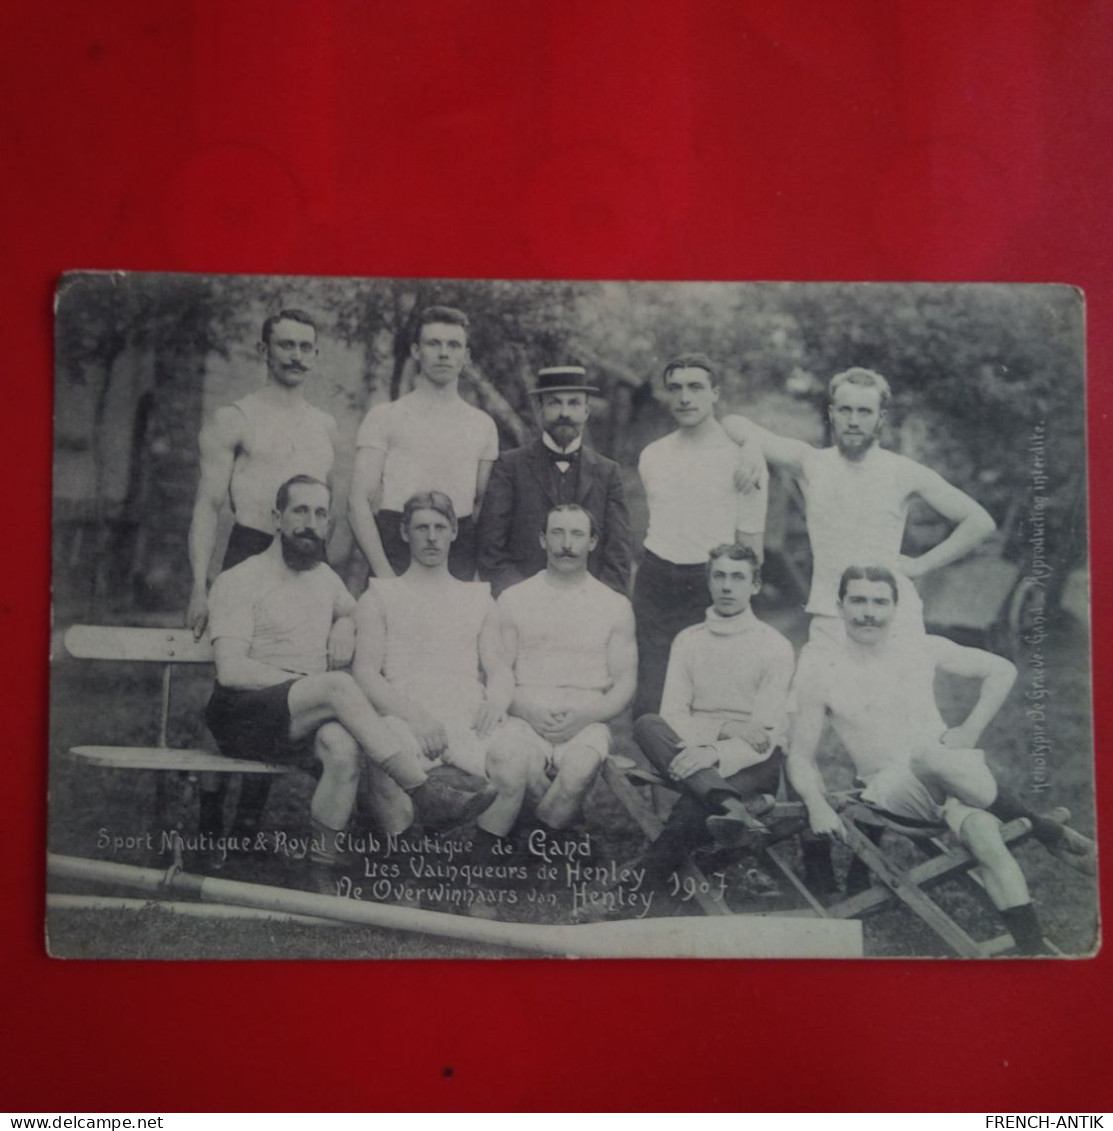 SPORT NAUTIQUE ET ROYAL CLUB NAUTIQUE DE GAND LES VAINQUEURS DE HENLEY 1907 - Gent